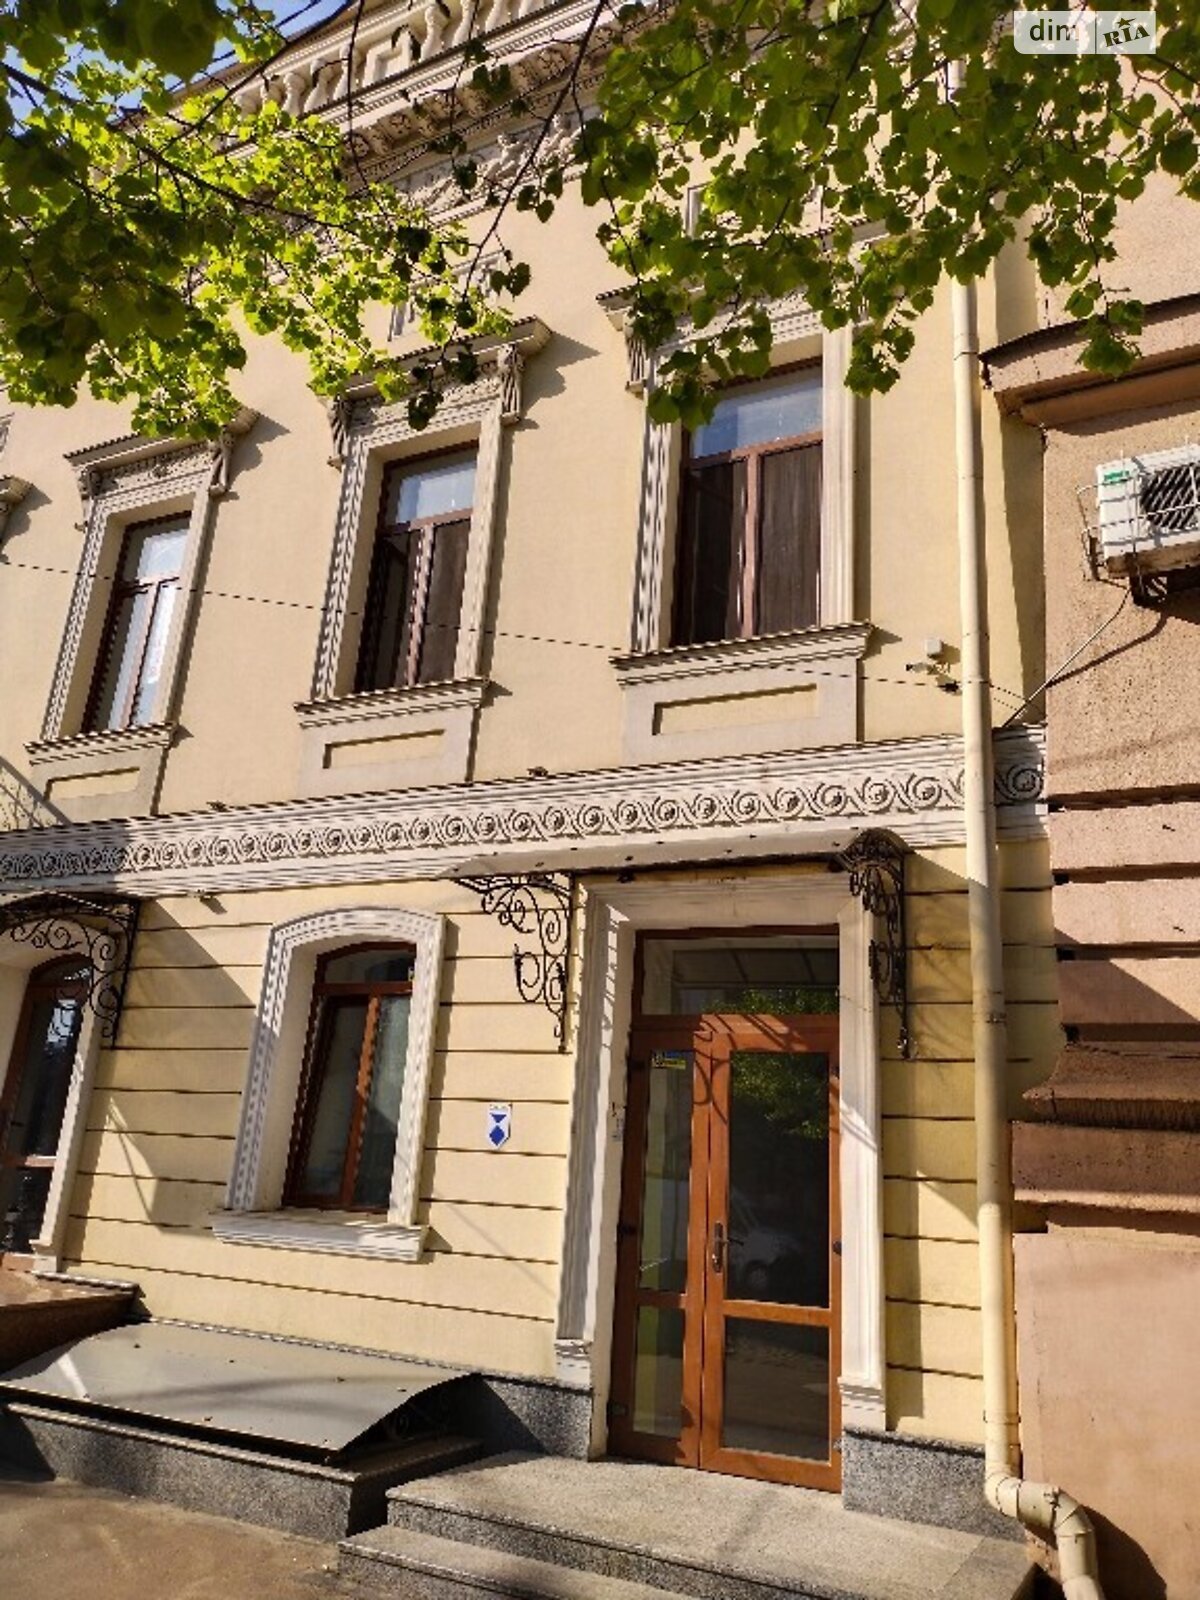 Офисное помещение на 62 кв.м. в Одессе фото 1